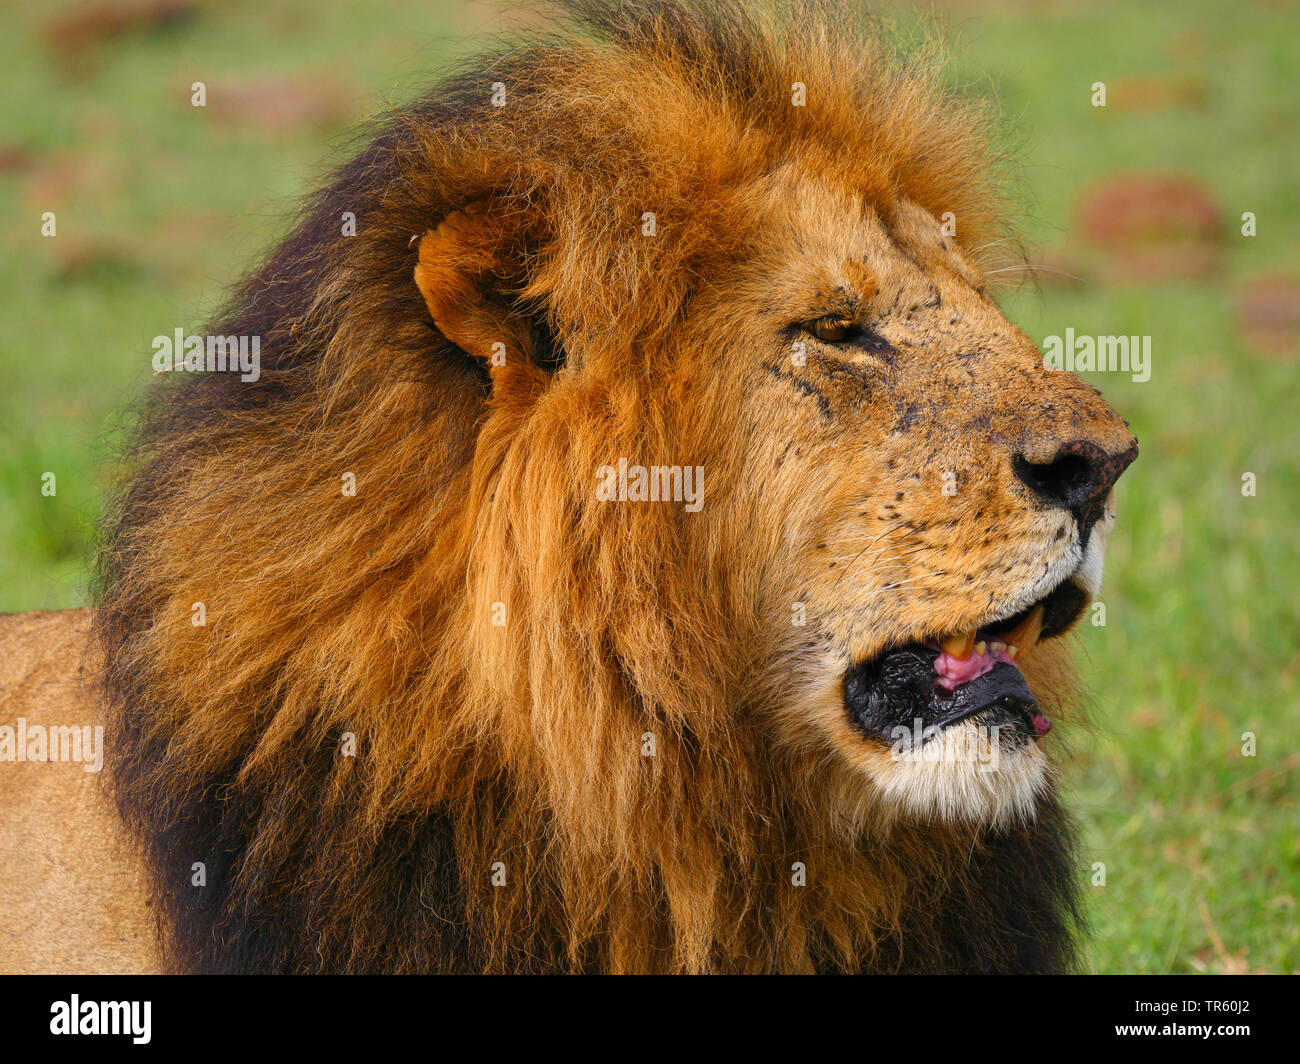 Lion (Panthera leo), homme lion, portrait, Kenya, Masai Mara National Park Banque D'Images